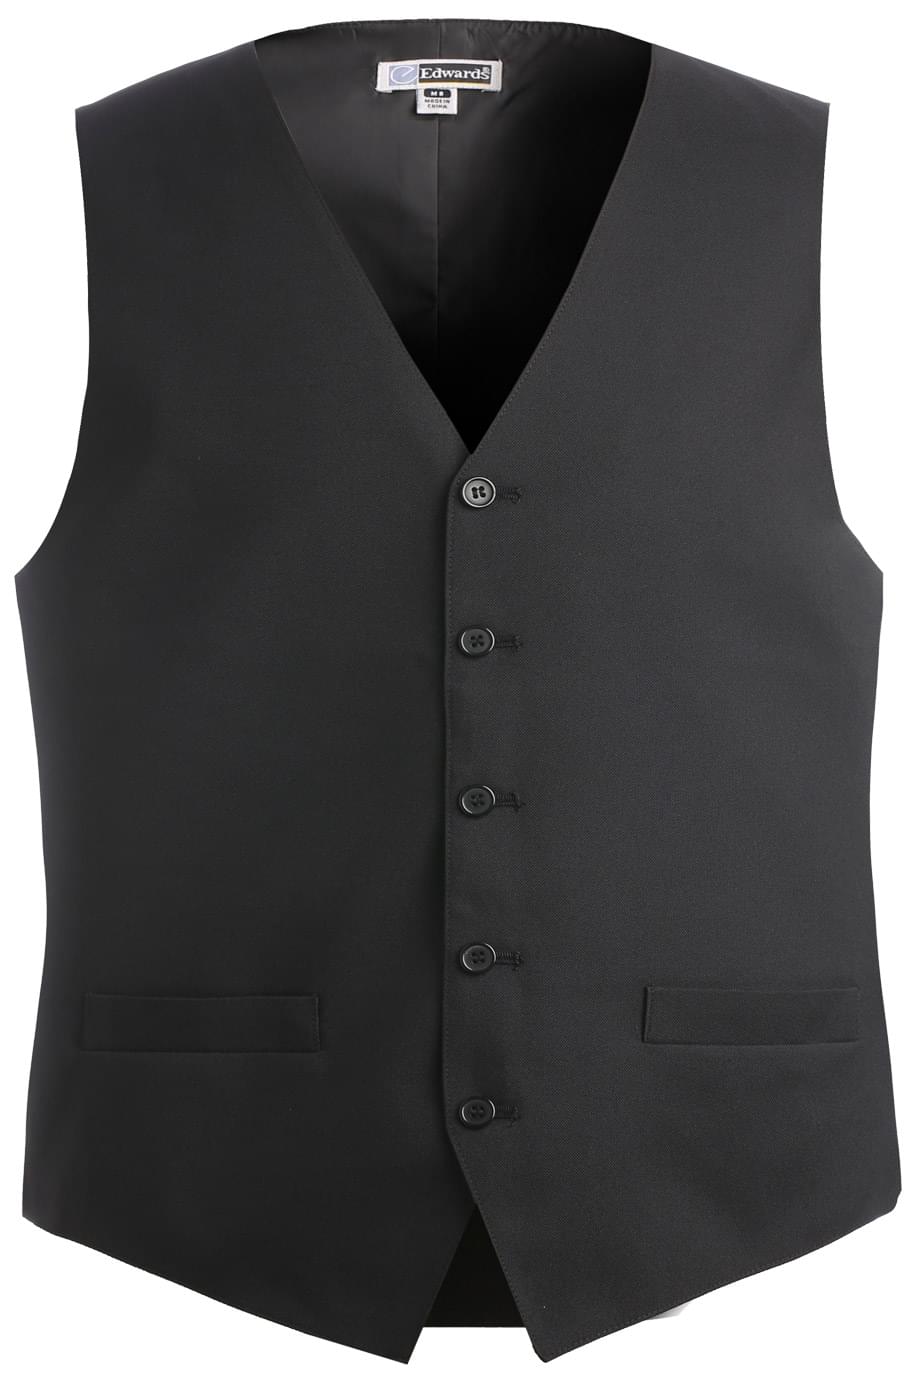 Edwards S / Regular Men's Black Essential Polyester Vest